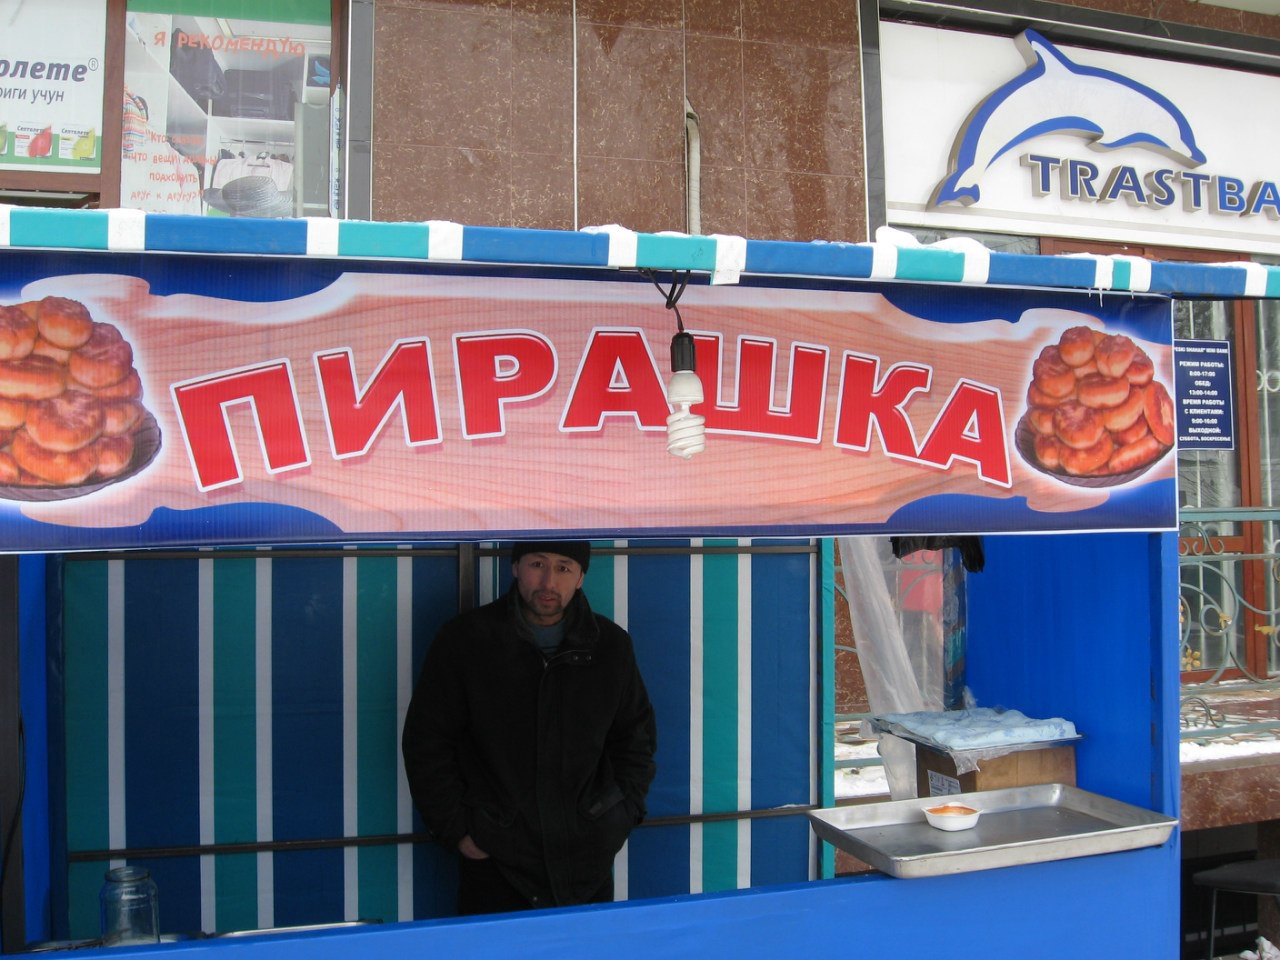 В Ташкенте много заведений с местной кухней